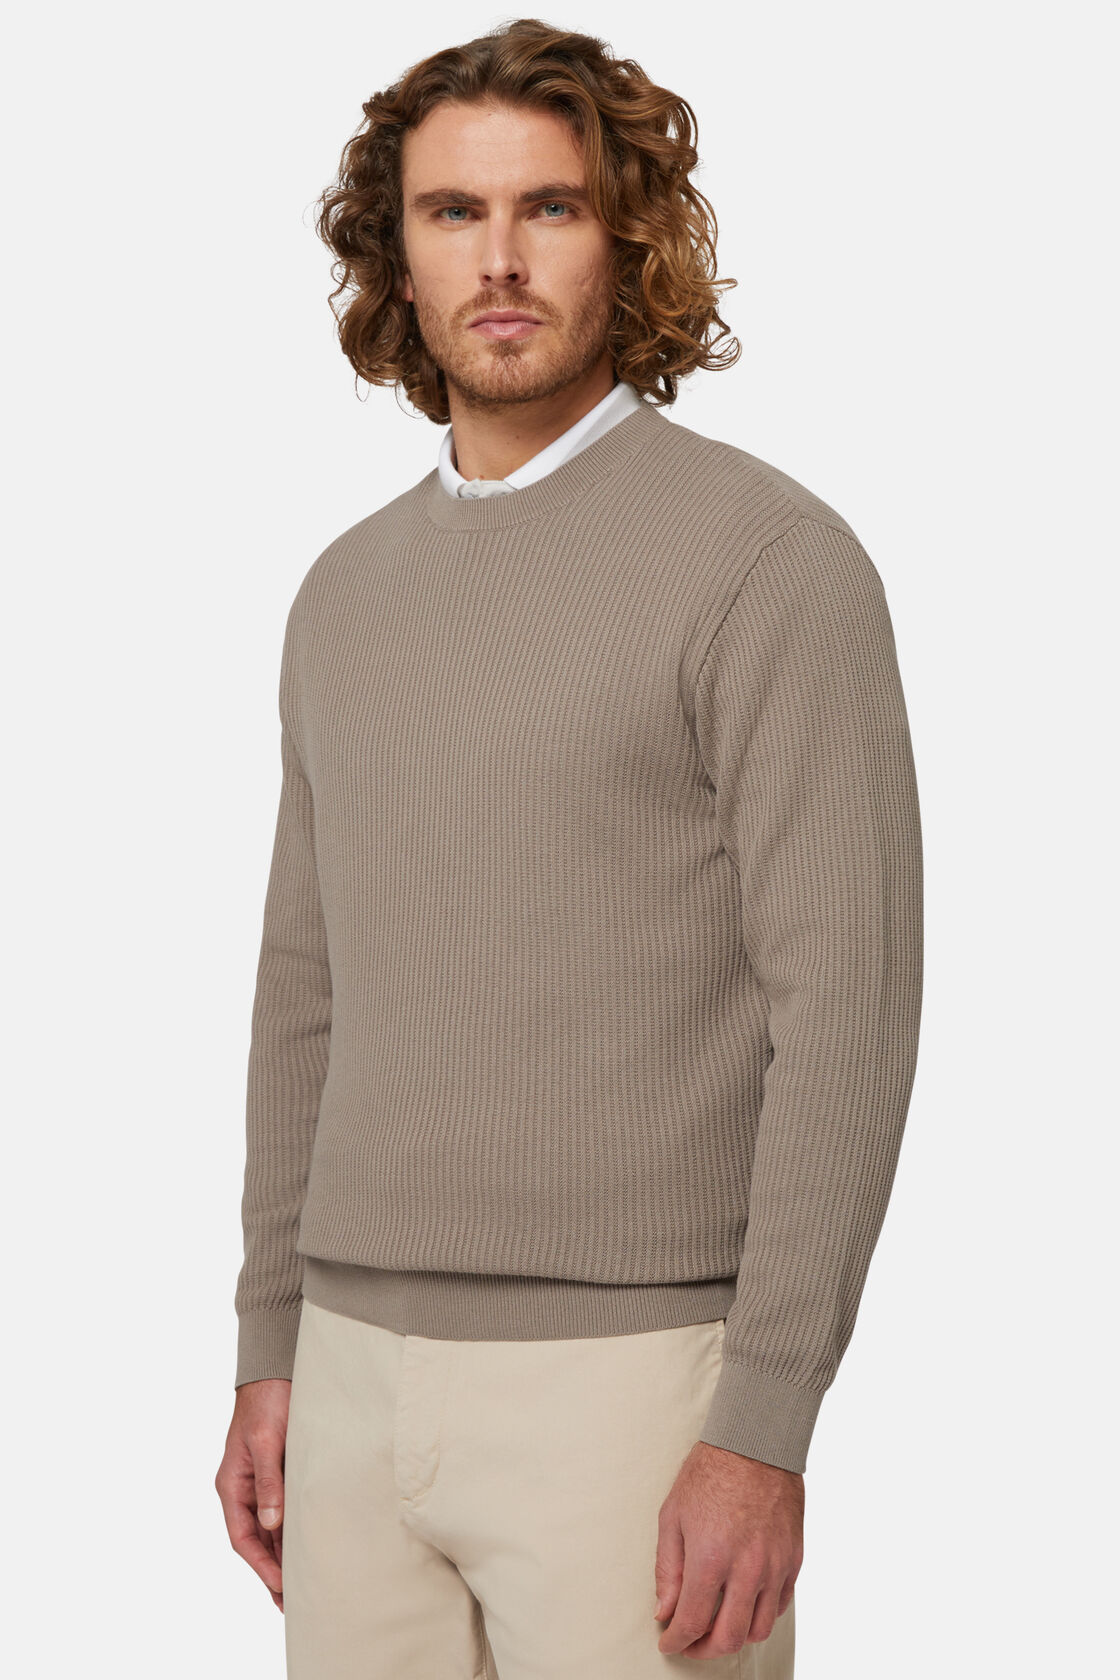 Βαμβακερό πουλόβερ με στρογγυλή λαιμόκοψη, σε γκρι ανοιχτό χρώμα, Taupe, hi-res